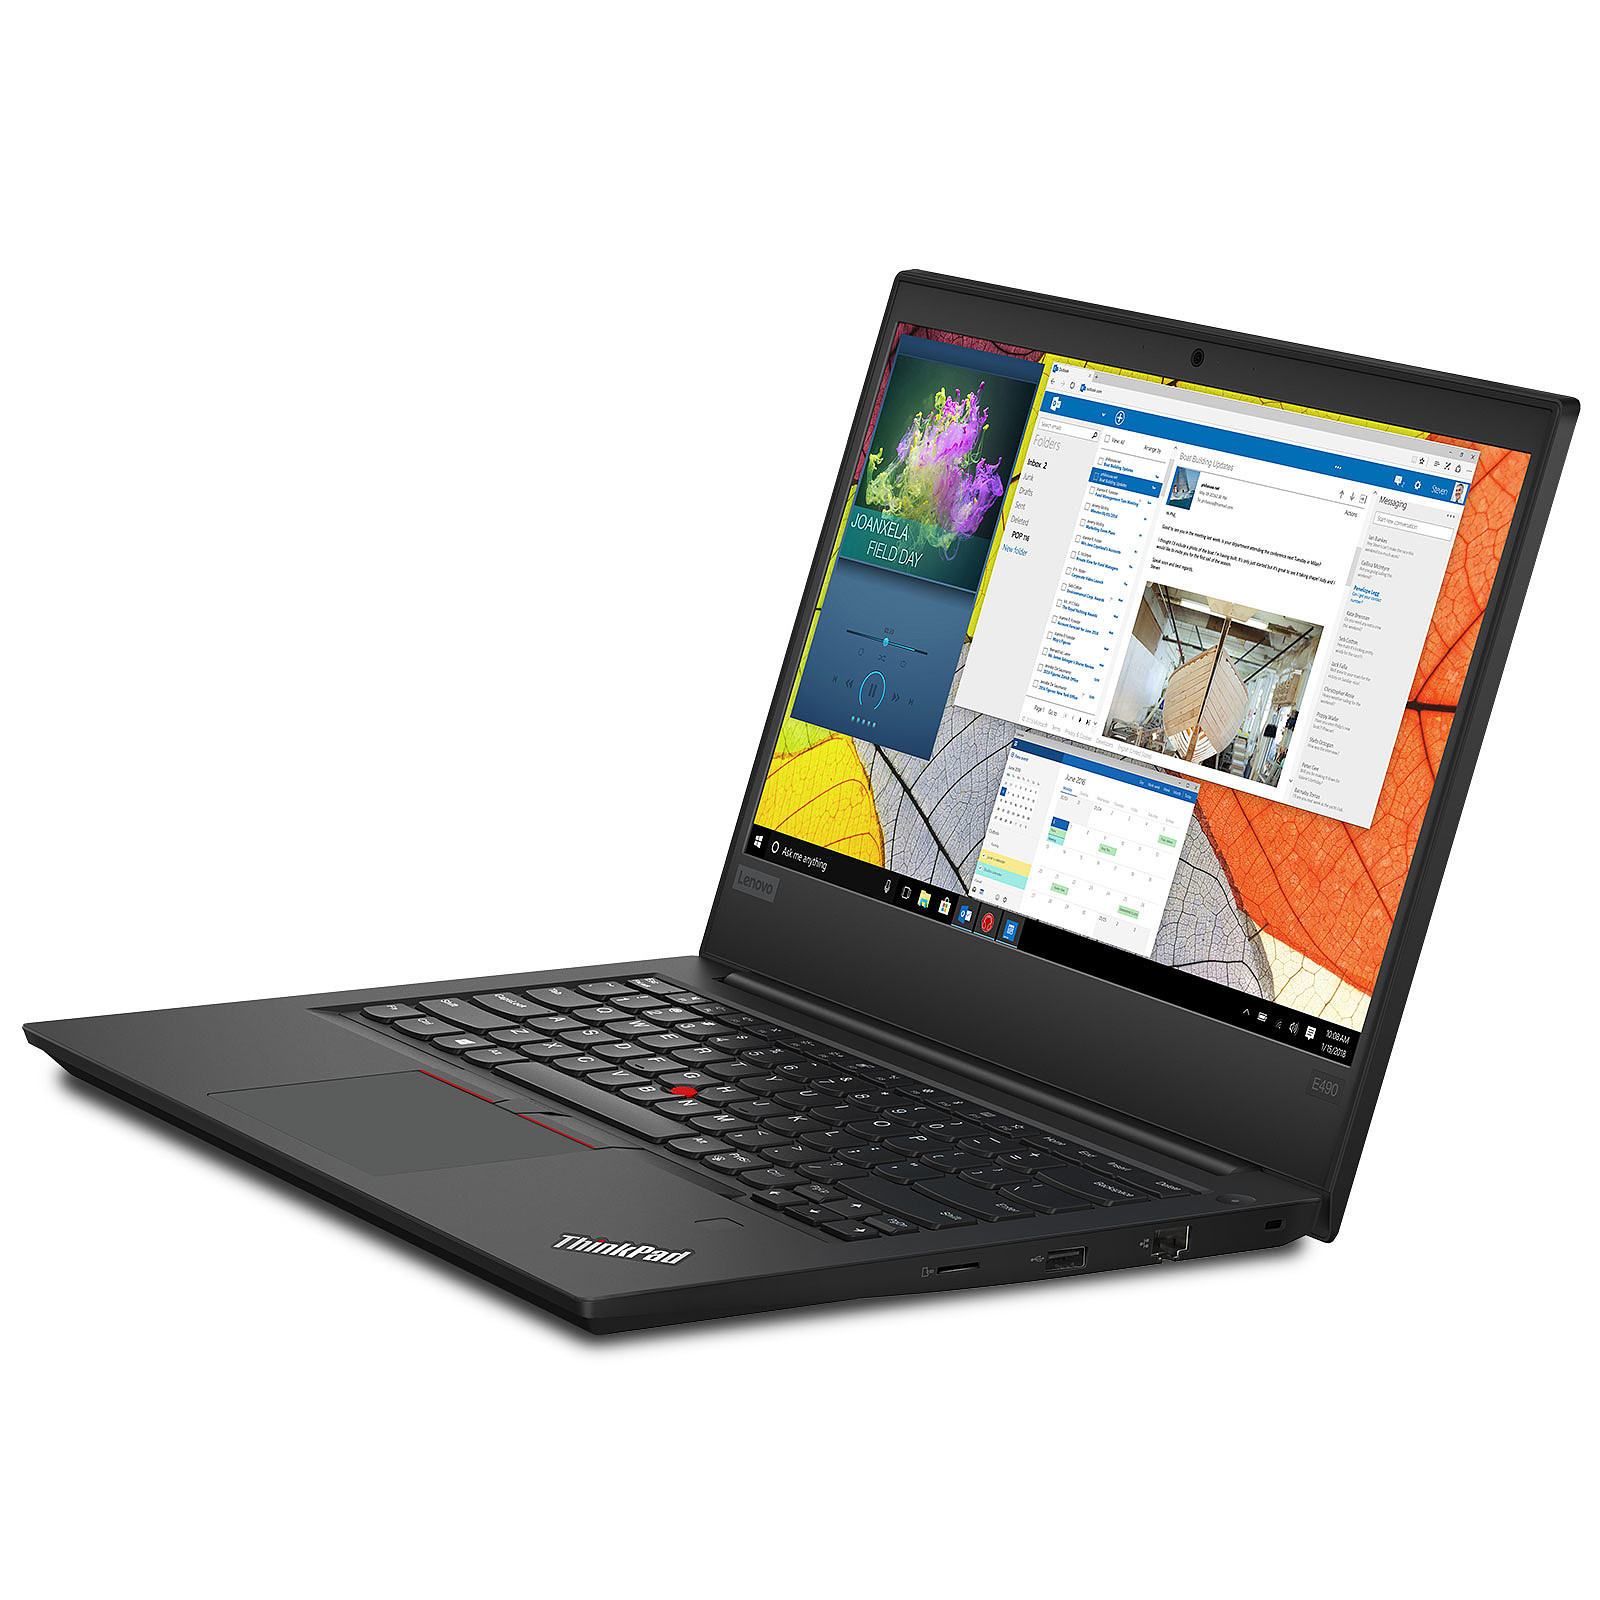 Pc portable reconditionné - Lenovo ThinkPad E490